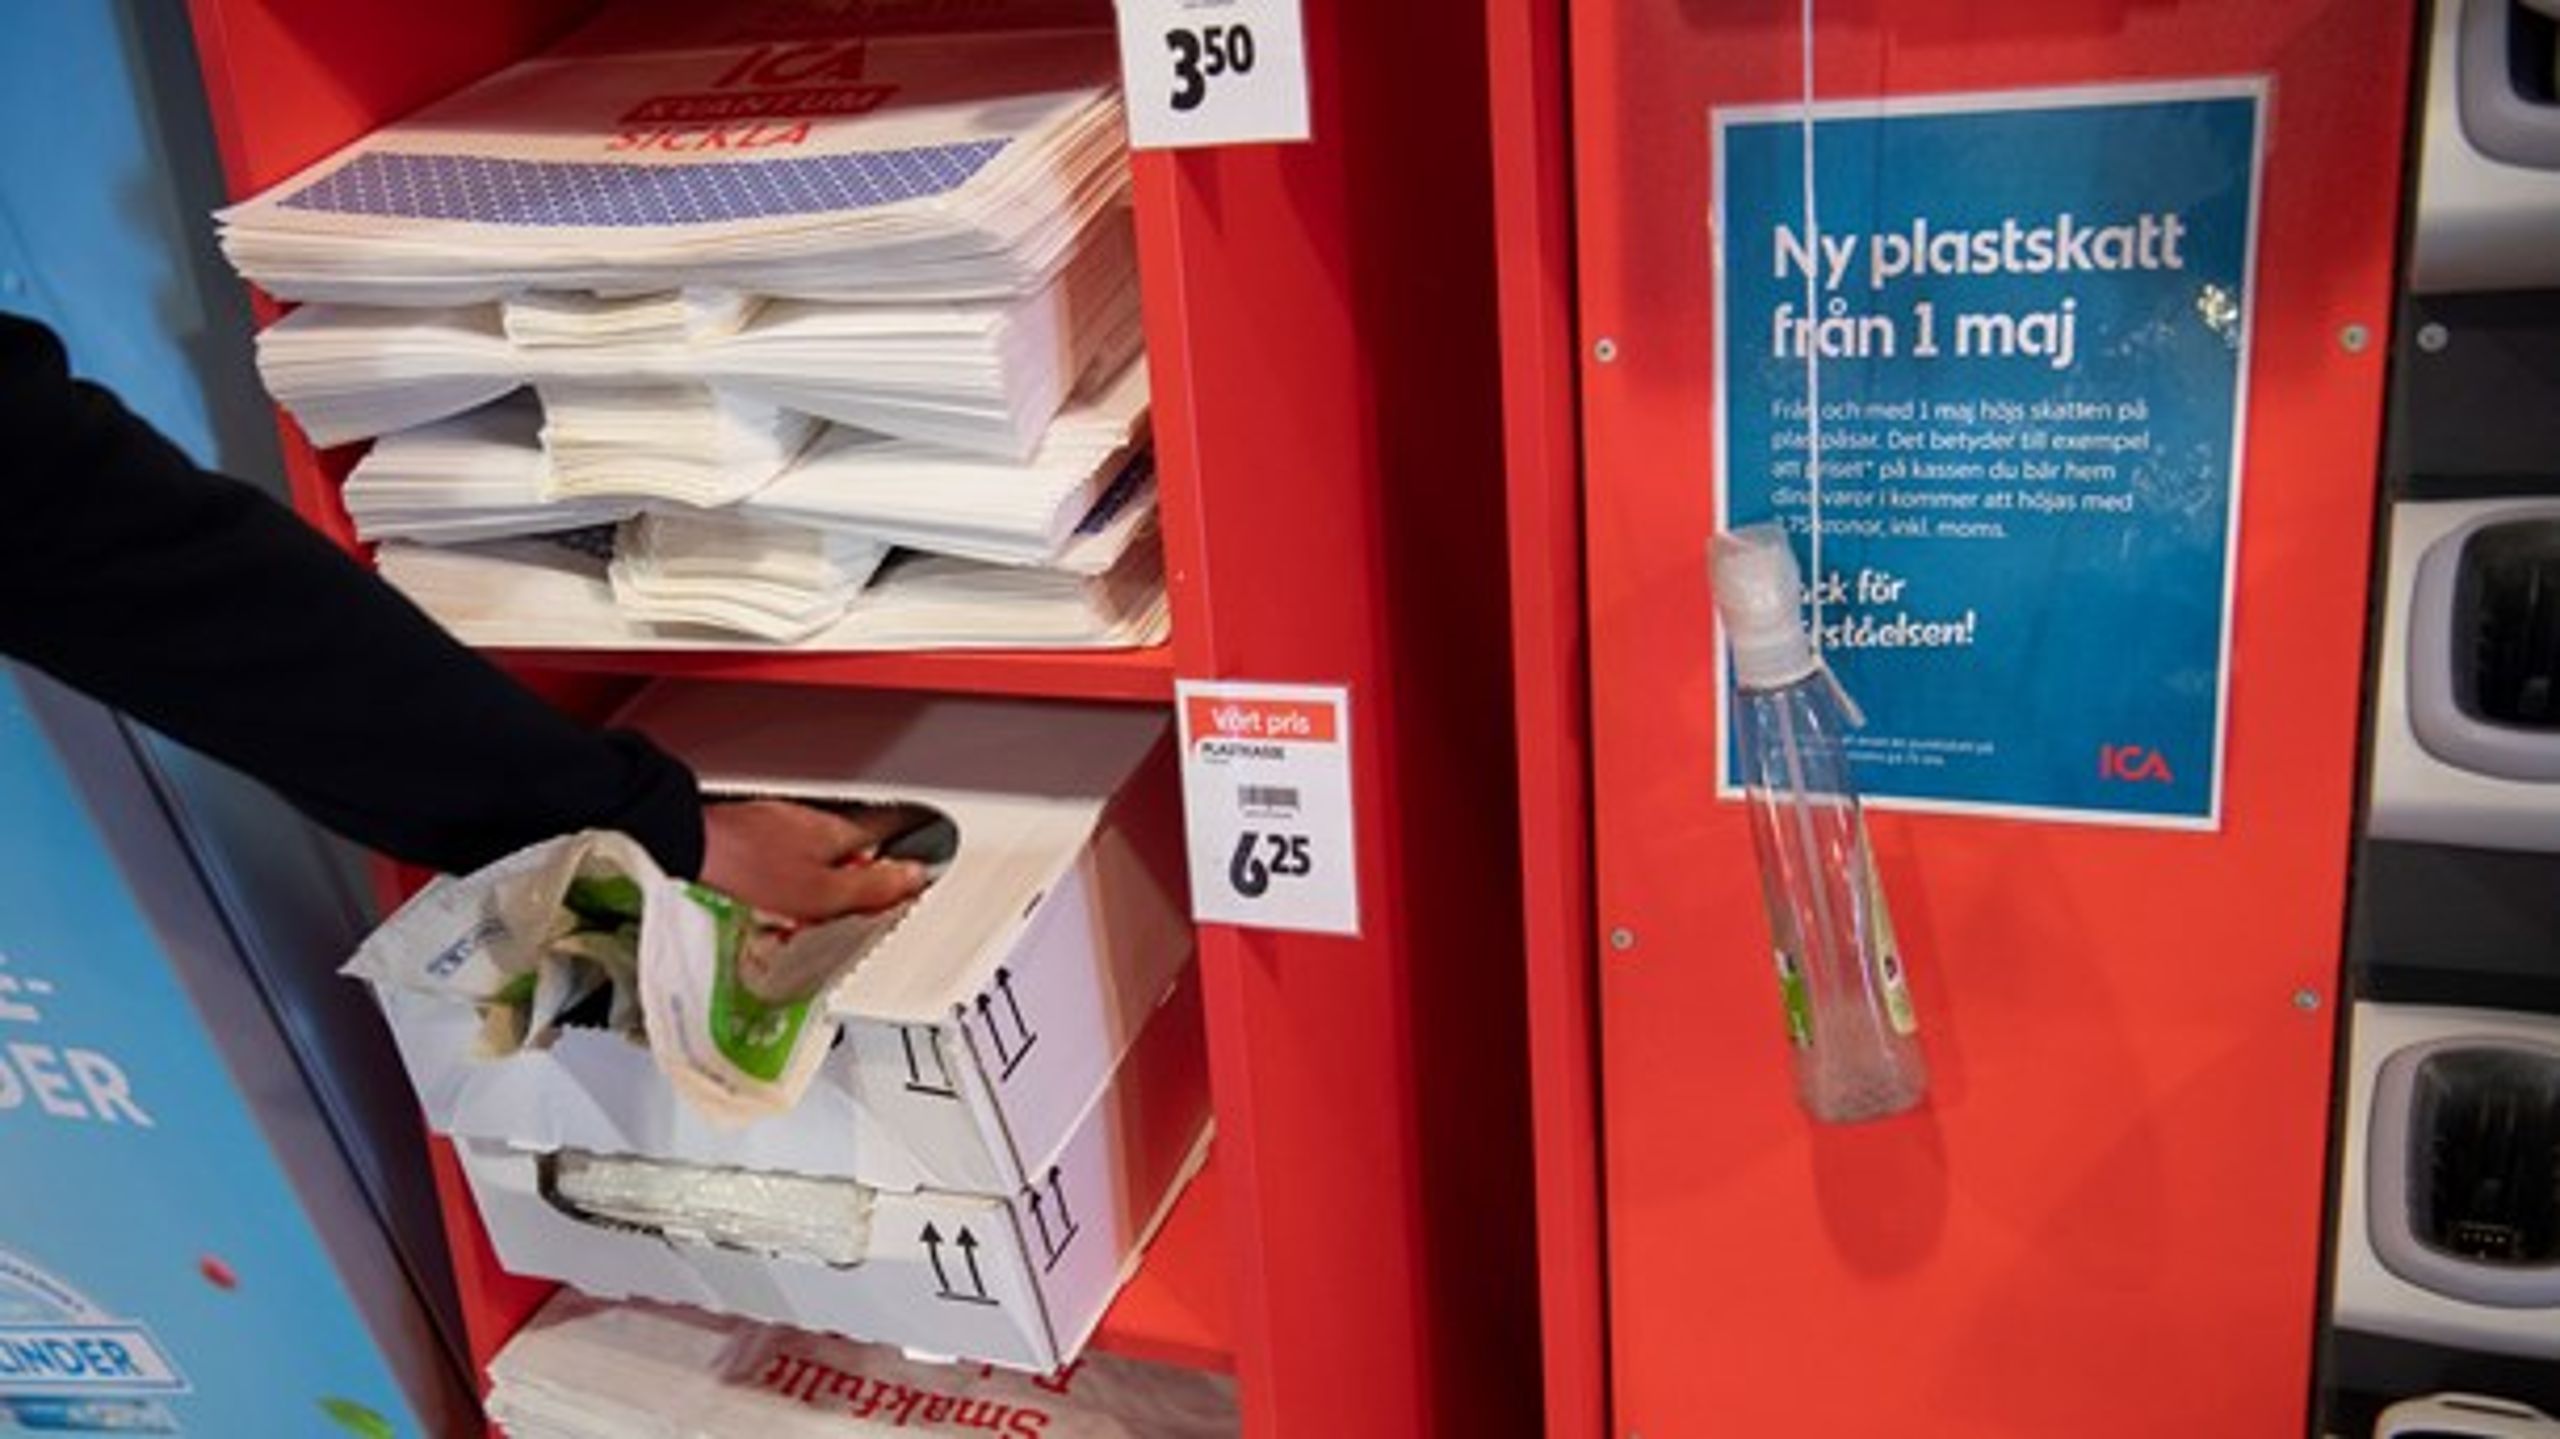 Plastpåseskatt riktar sig mot en viss typ av plastpåse, märkligt nog inte mot alla plastpåsar. Det är kanske det bästa exemplet på vad som skulle kunna kallas ”etikettskatt”, skriver debattörerna.&nbsp;